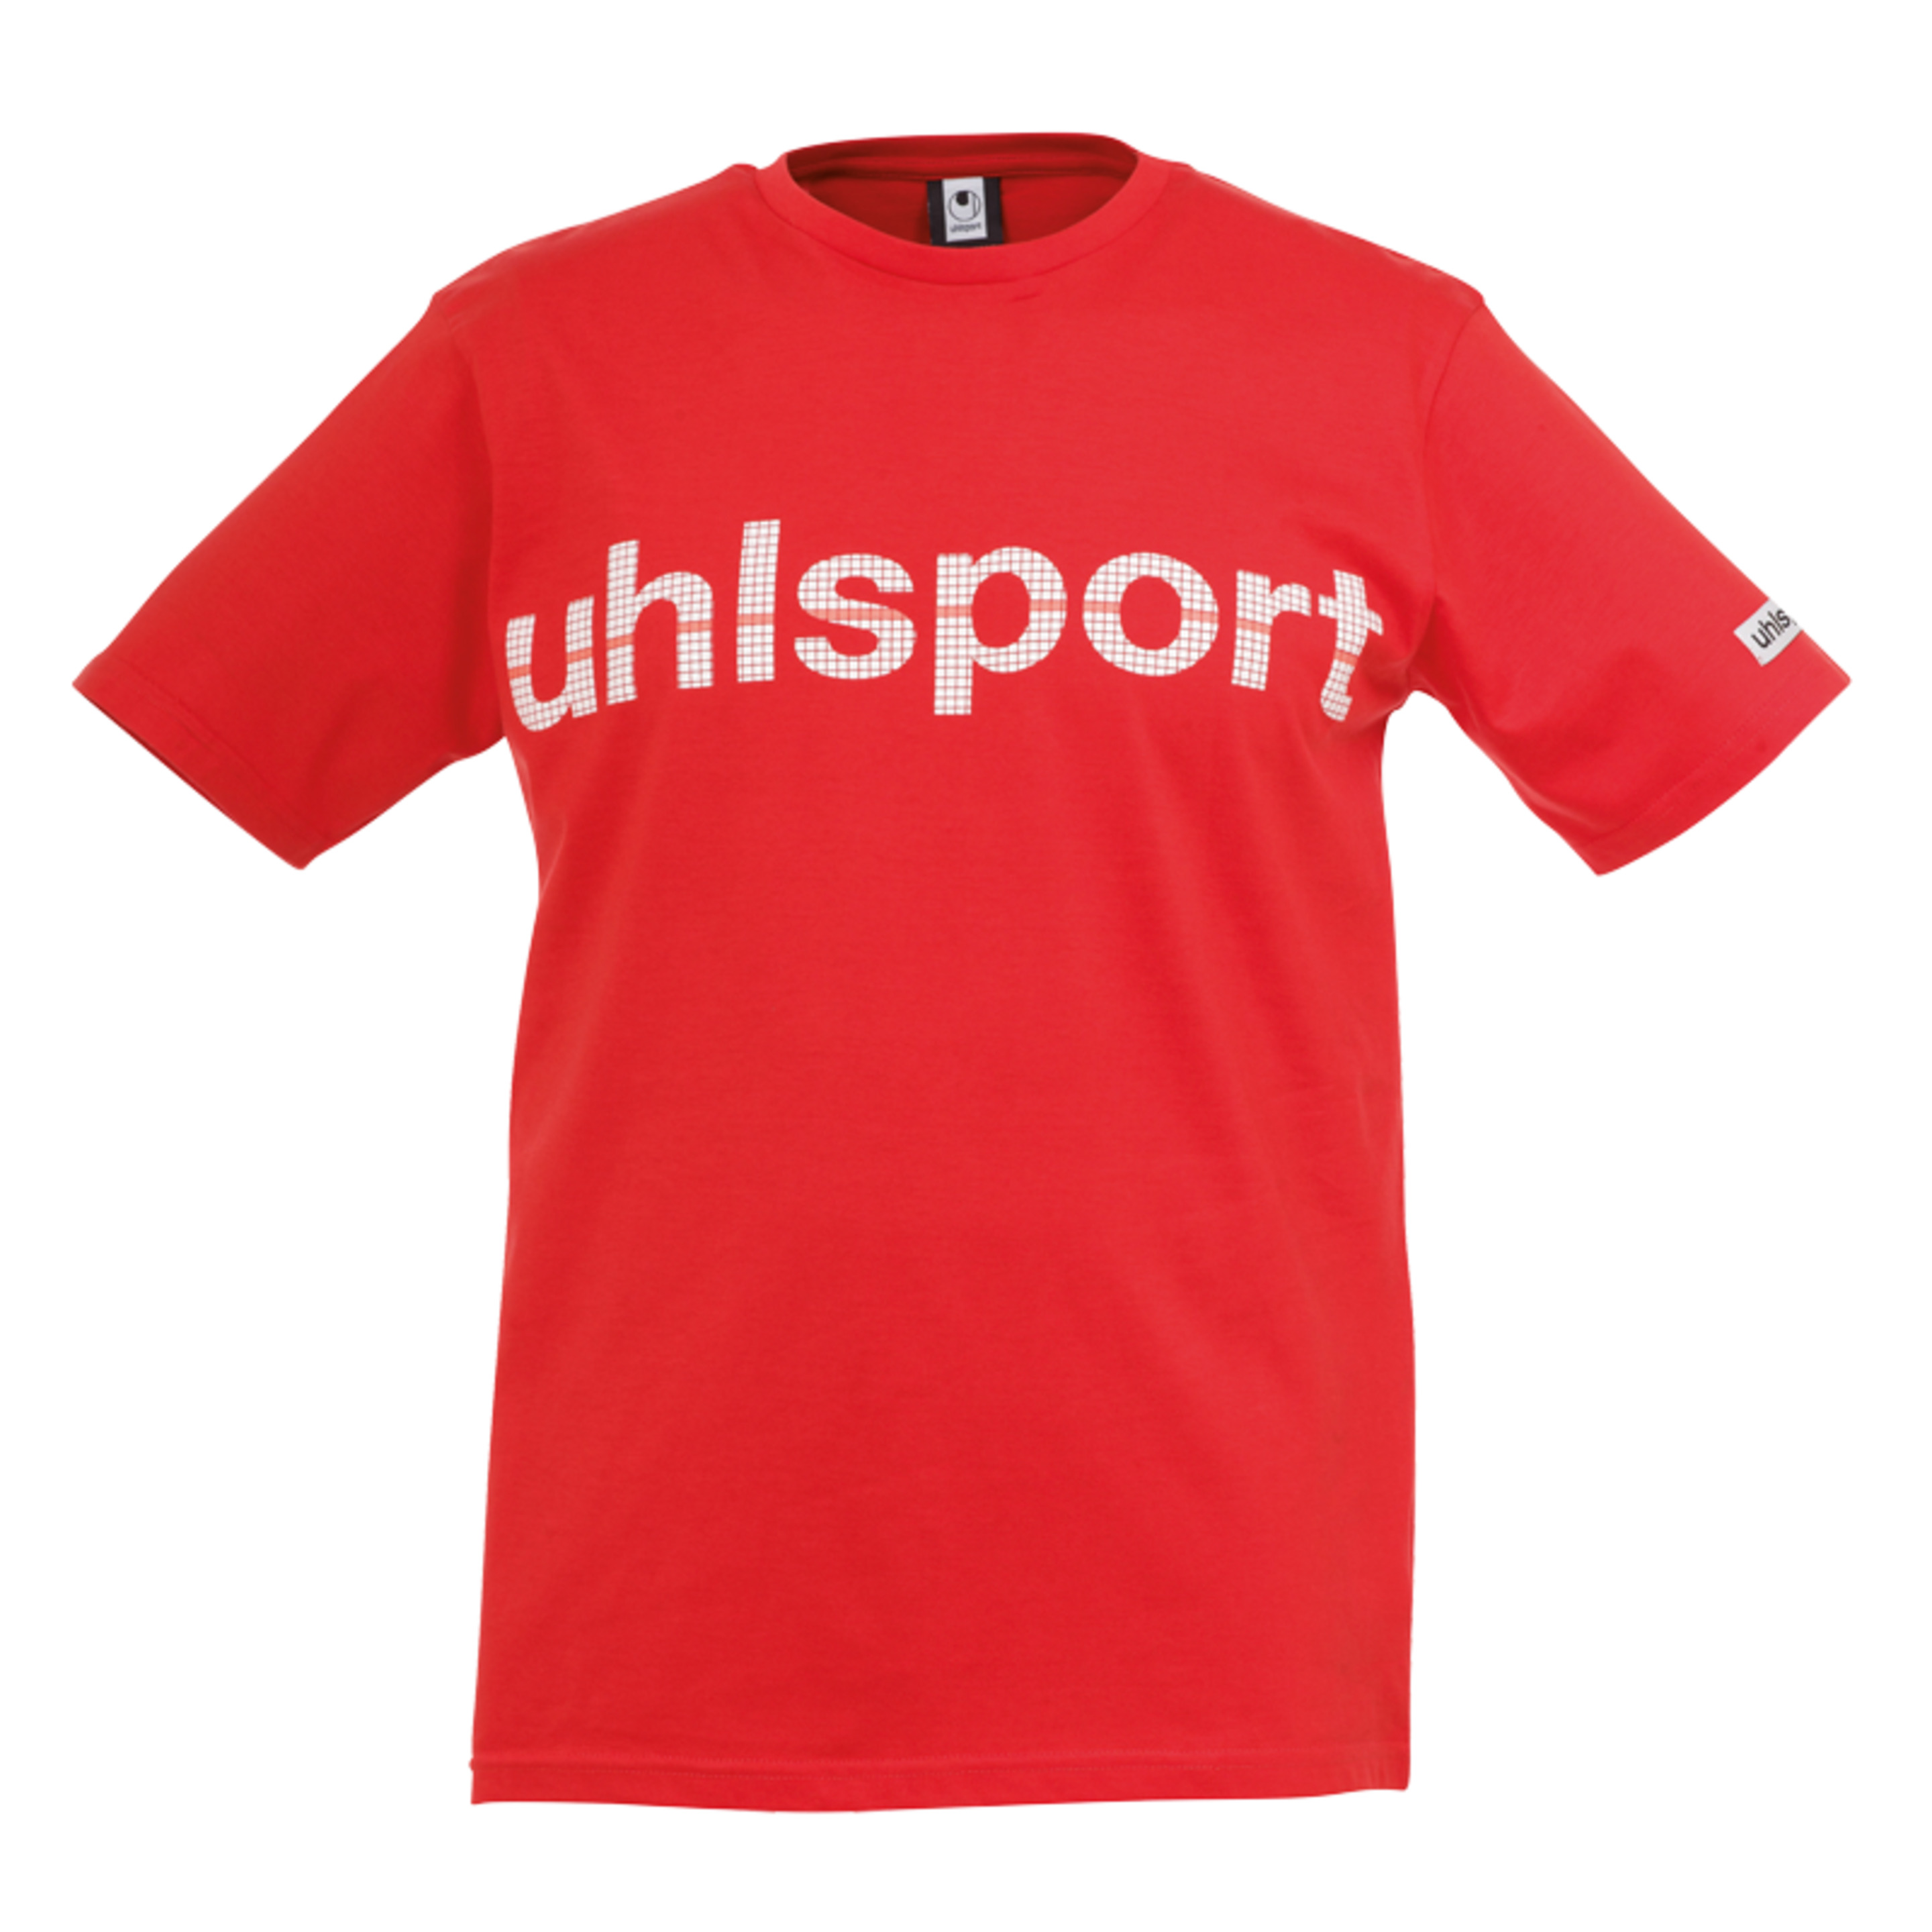 Essential Promo Camiseta Rojo Uhlsport